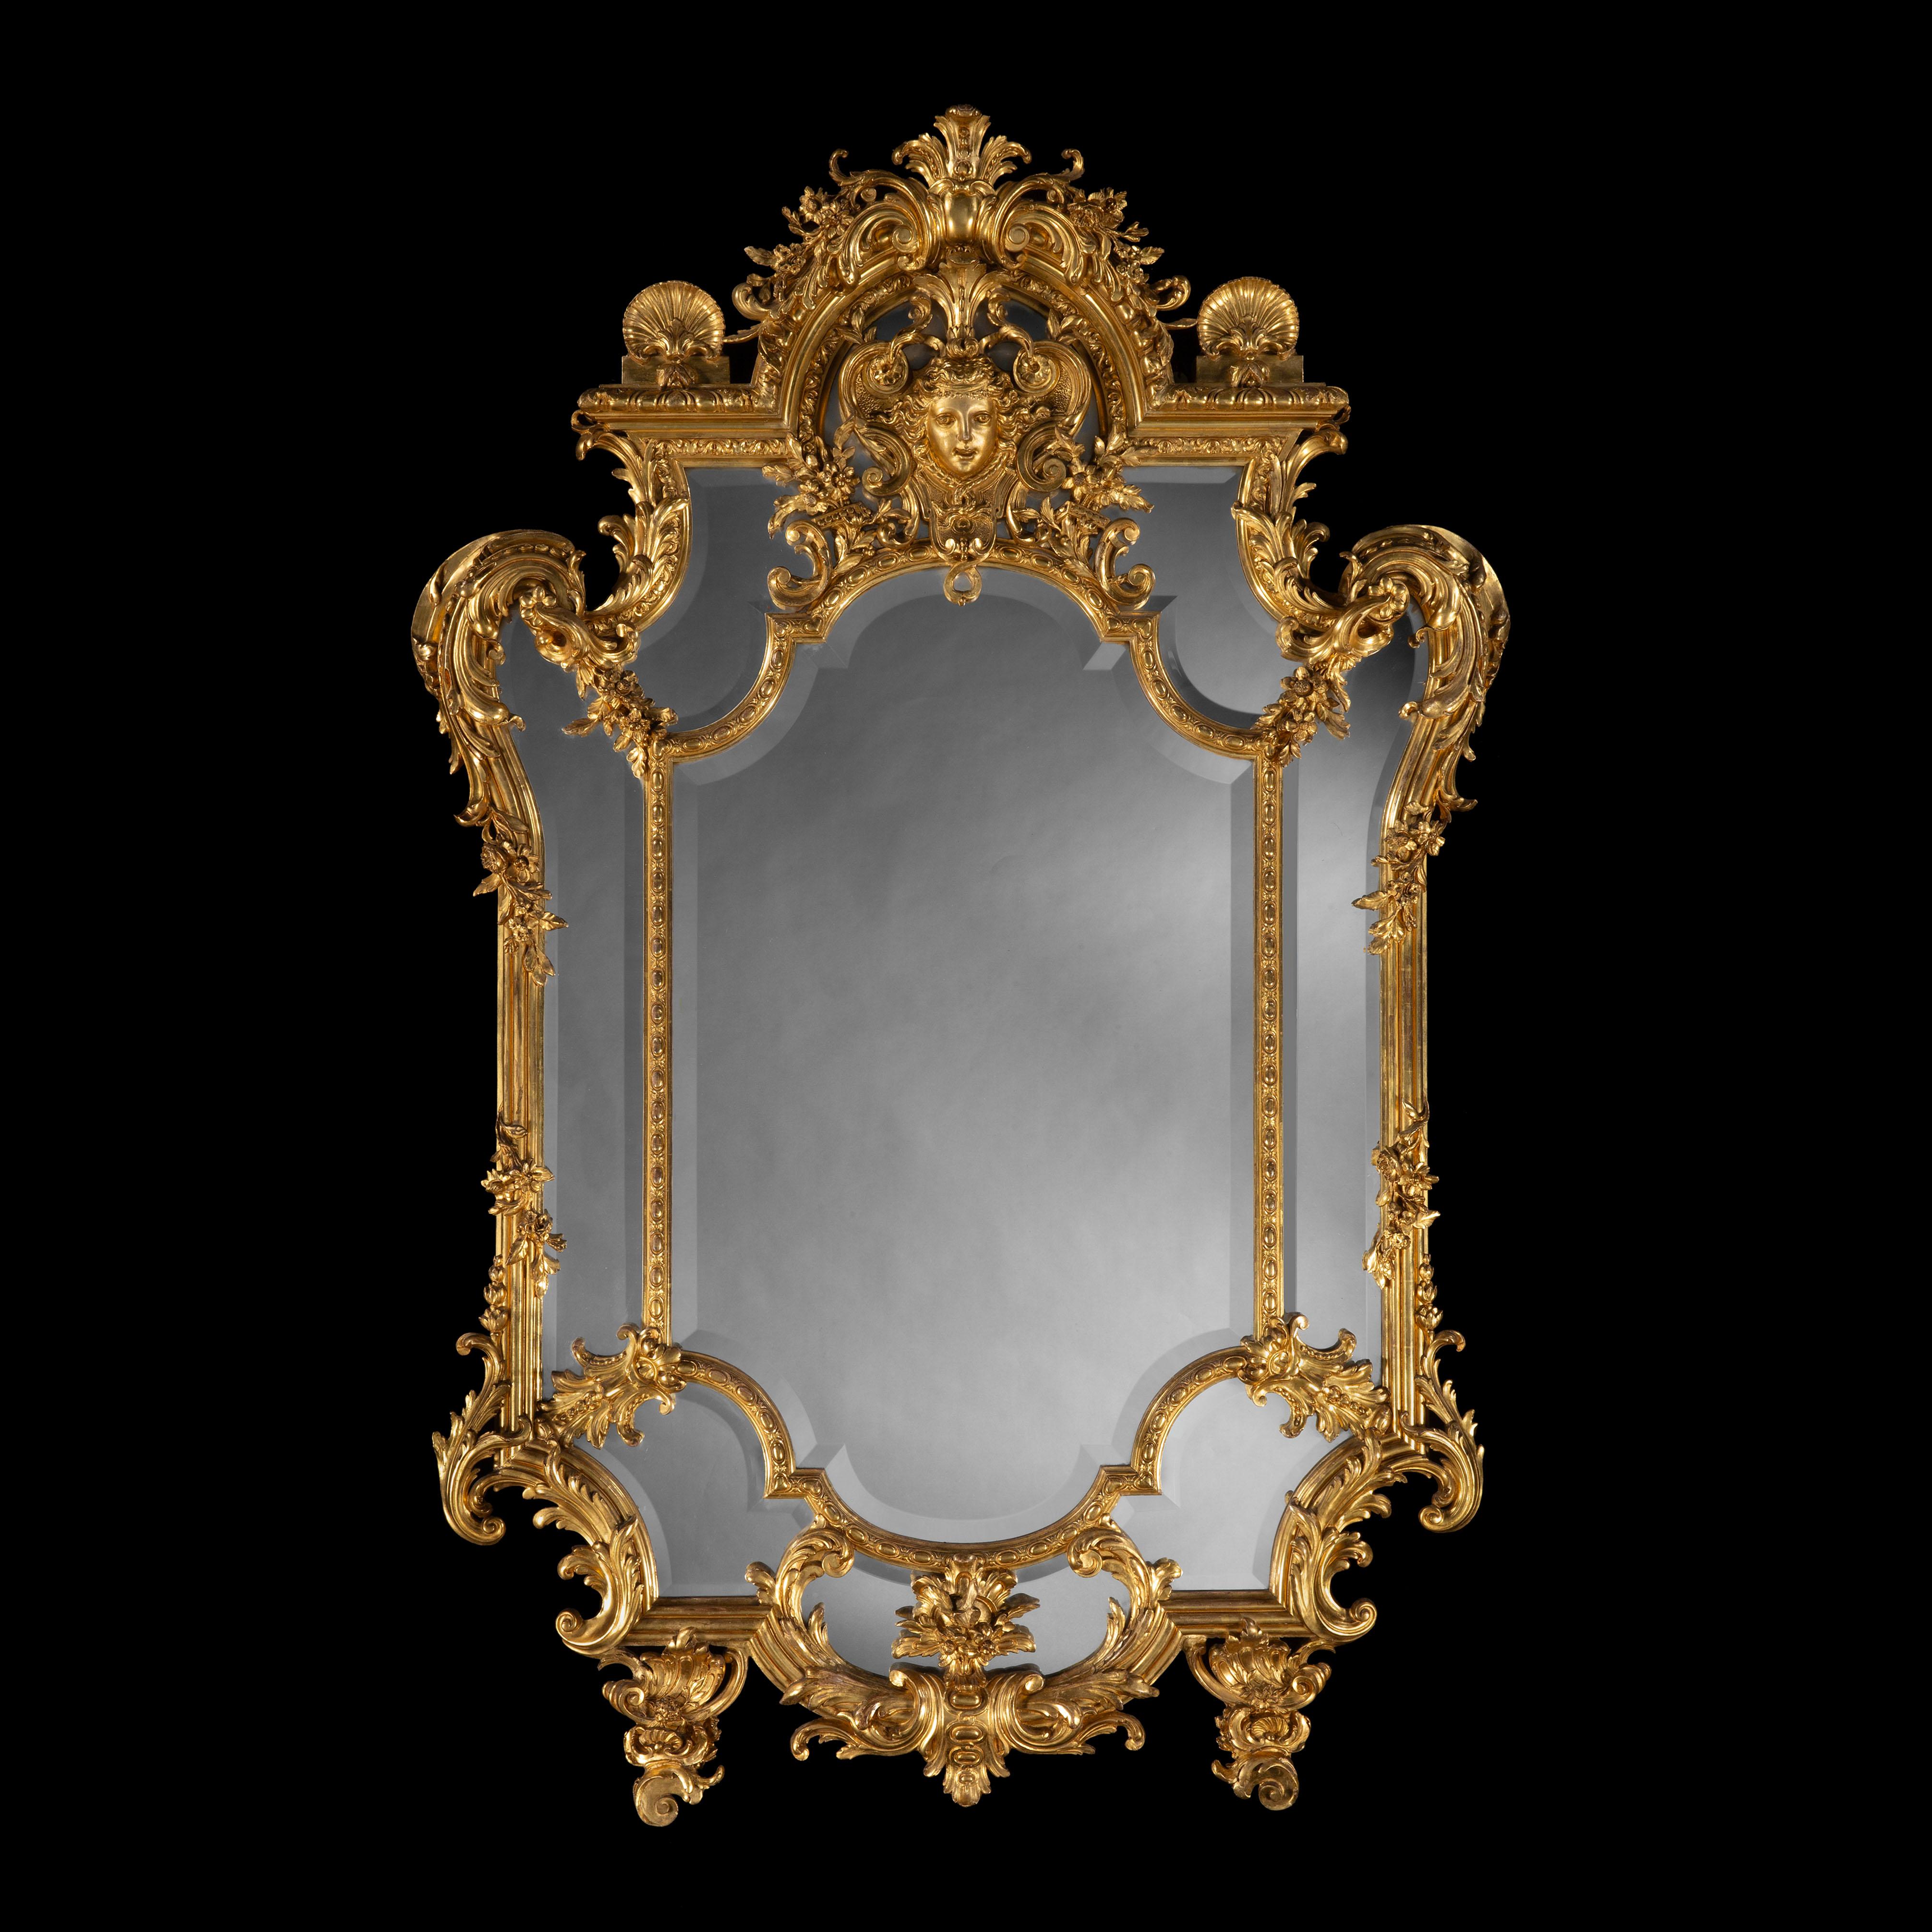 Beeindruckender geschnitzter Spiegel aus Giltwood
Im Régence-Stil

Großzügige Proportionen, überschwänglich geschnitzte Details, das zentrale abgeschrägte Glas umgeben von einer äußeren Reserve verspiegelter Paneele, der Rahmen geschnitzt mit